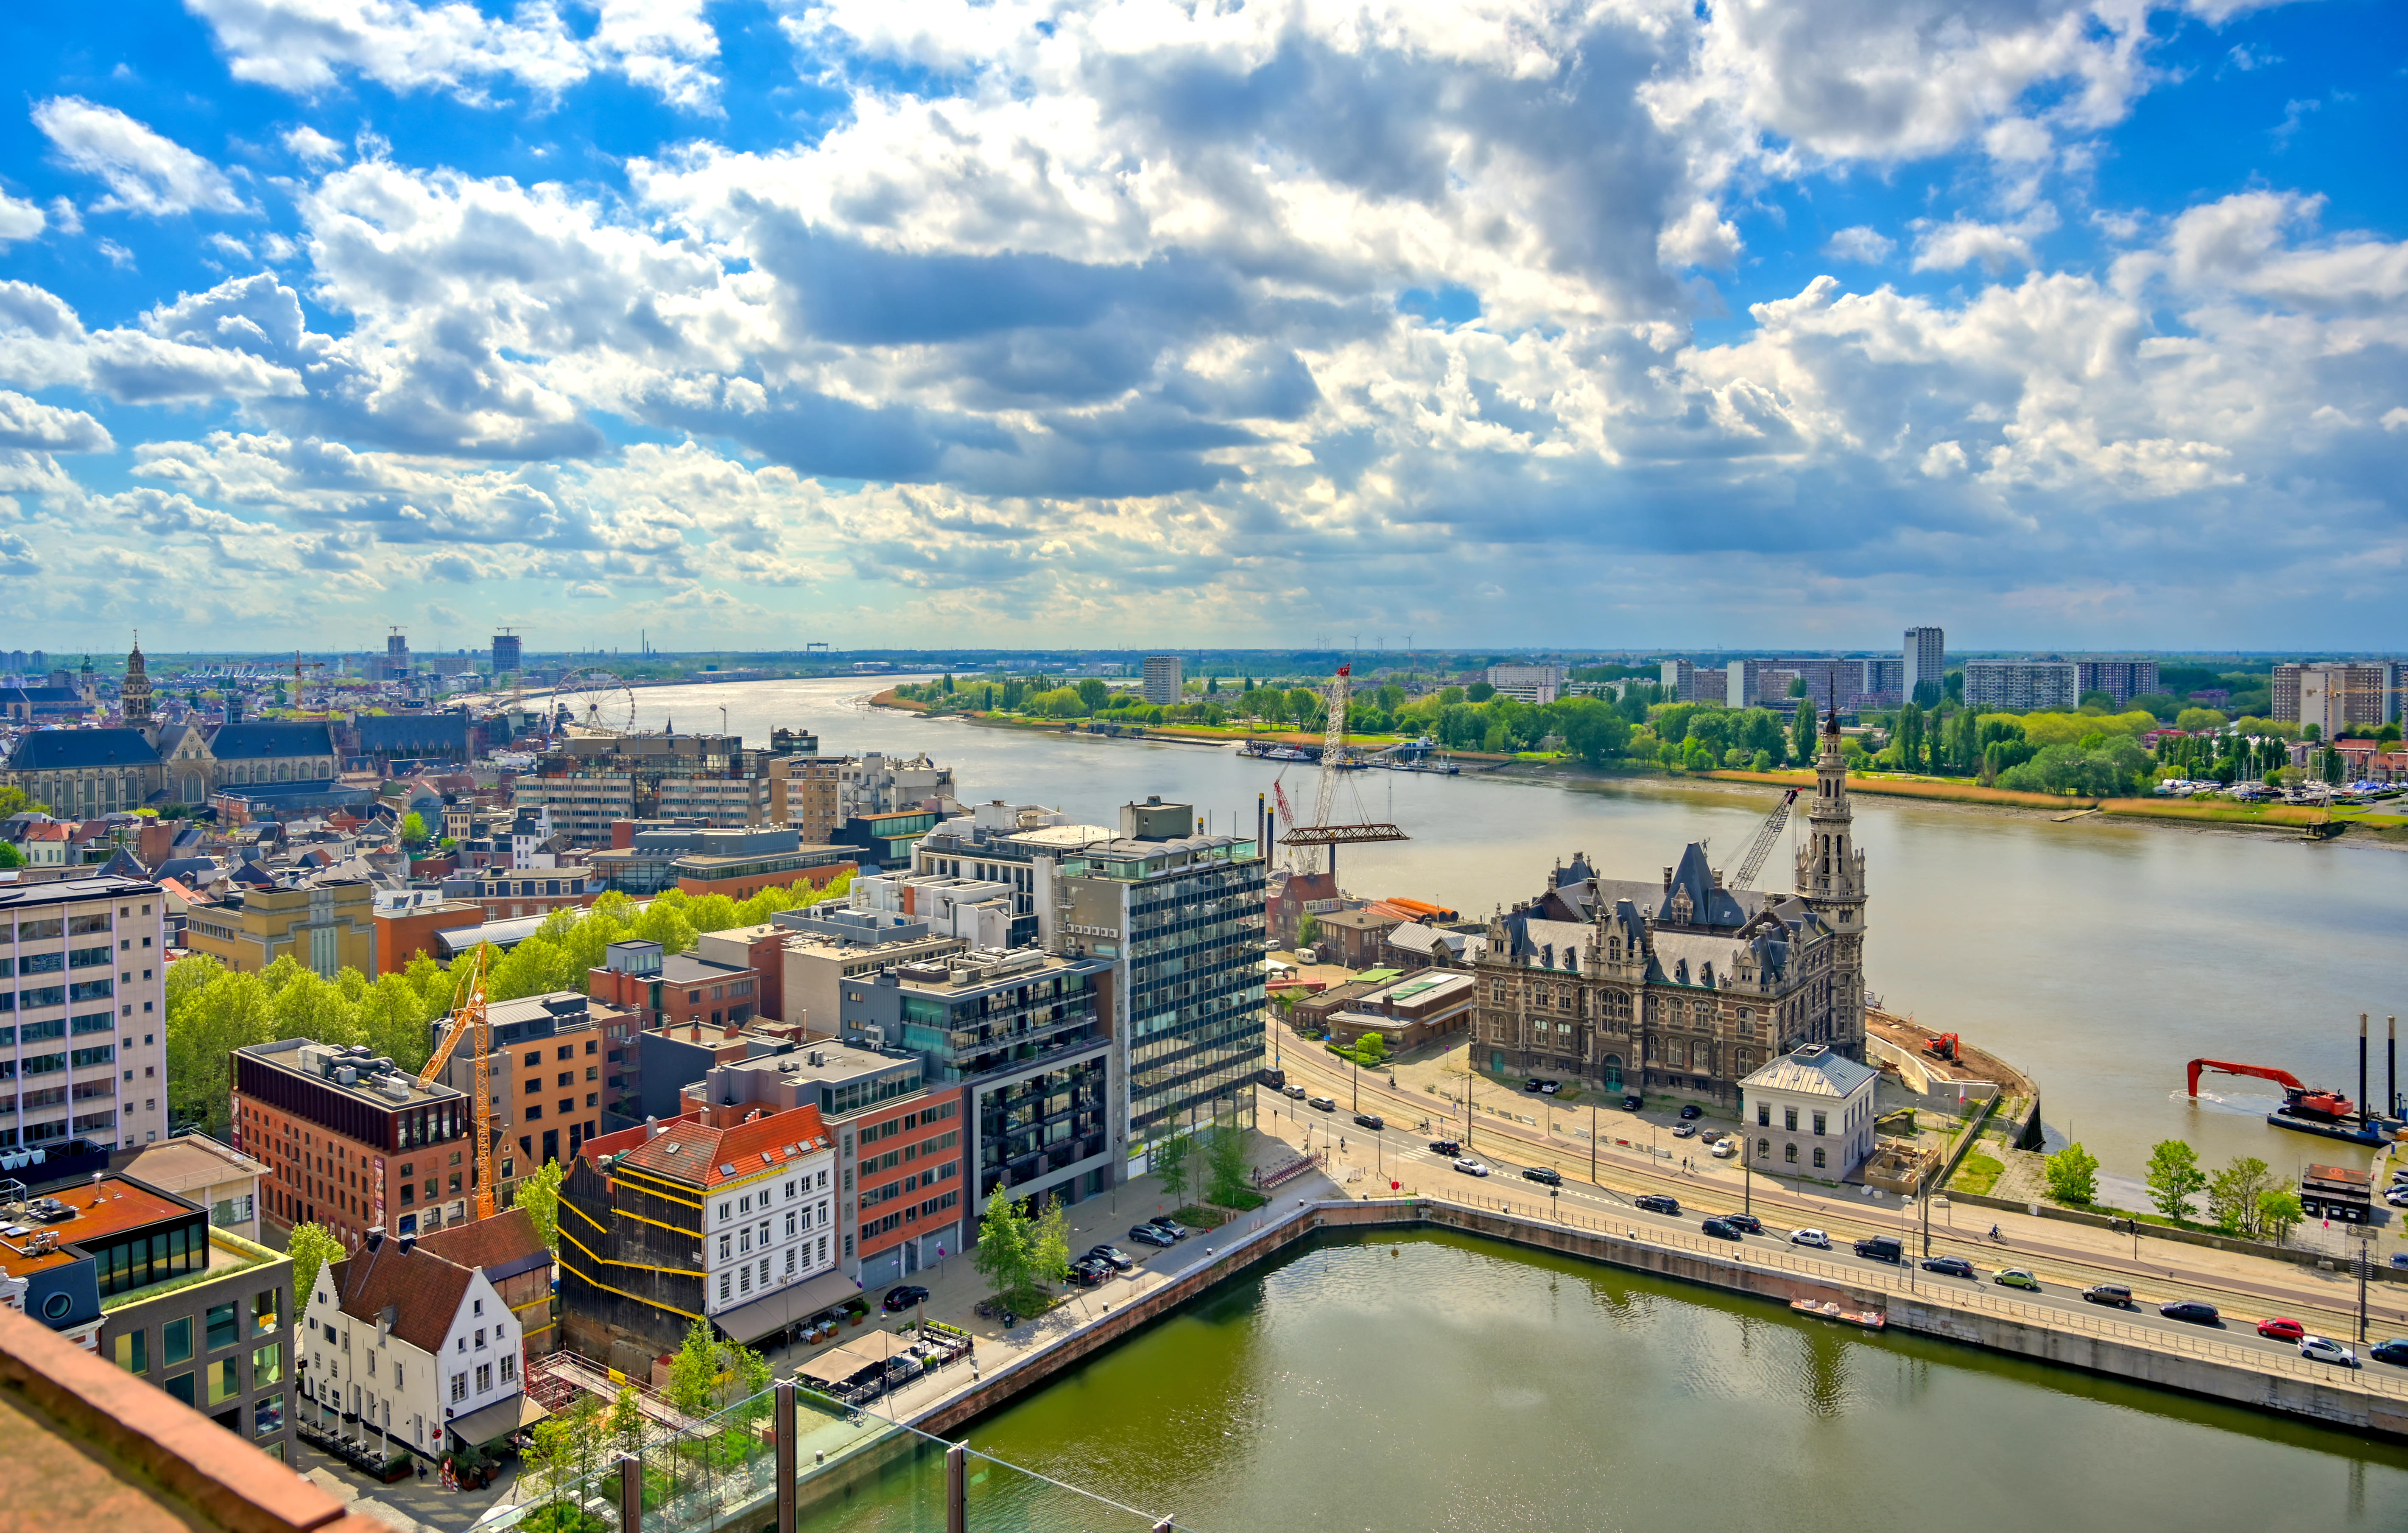 Aerial view of Antwerp